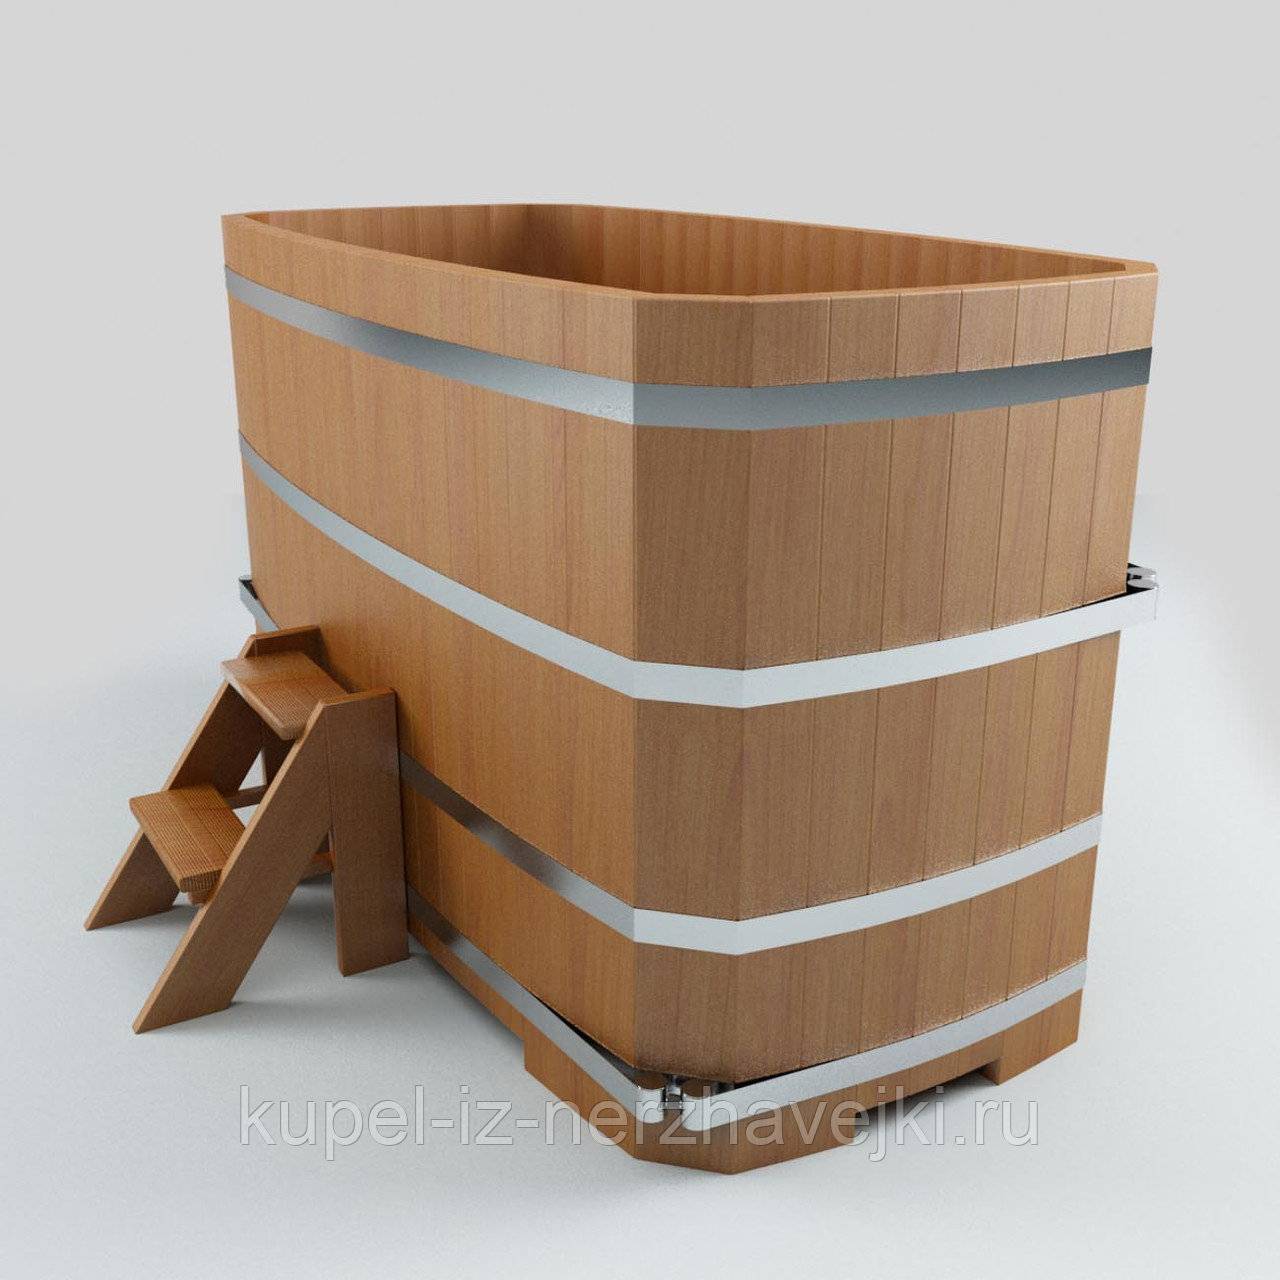 Купель для бани: деревянная, пластиковая, из полипропилена